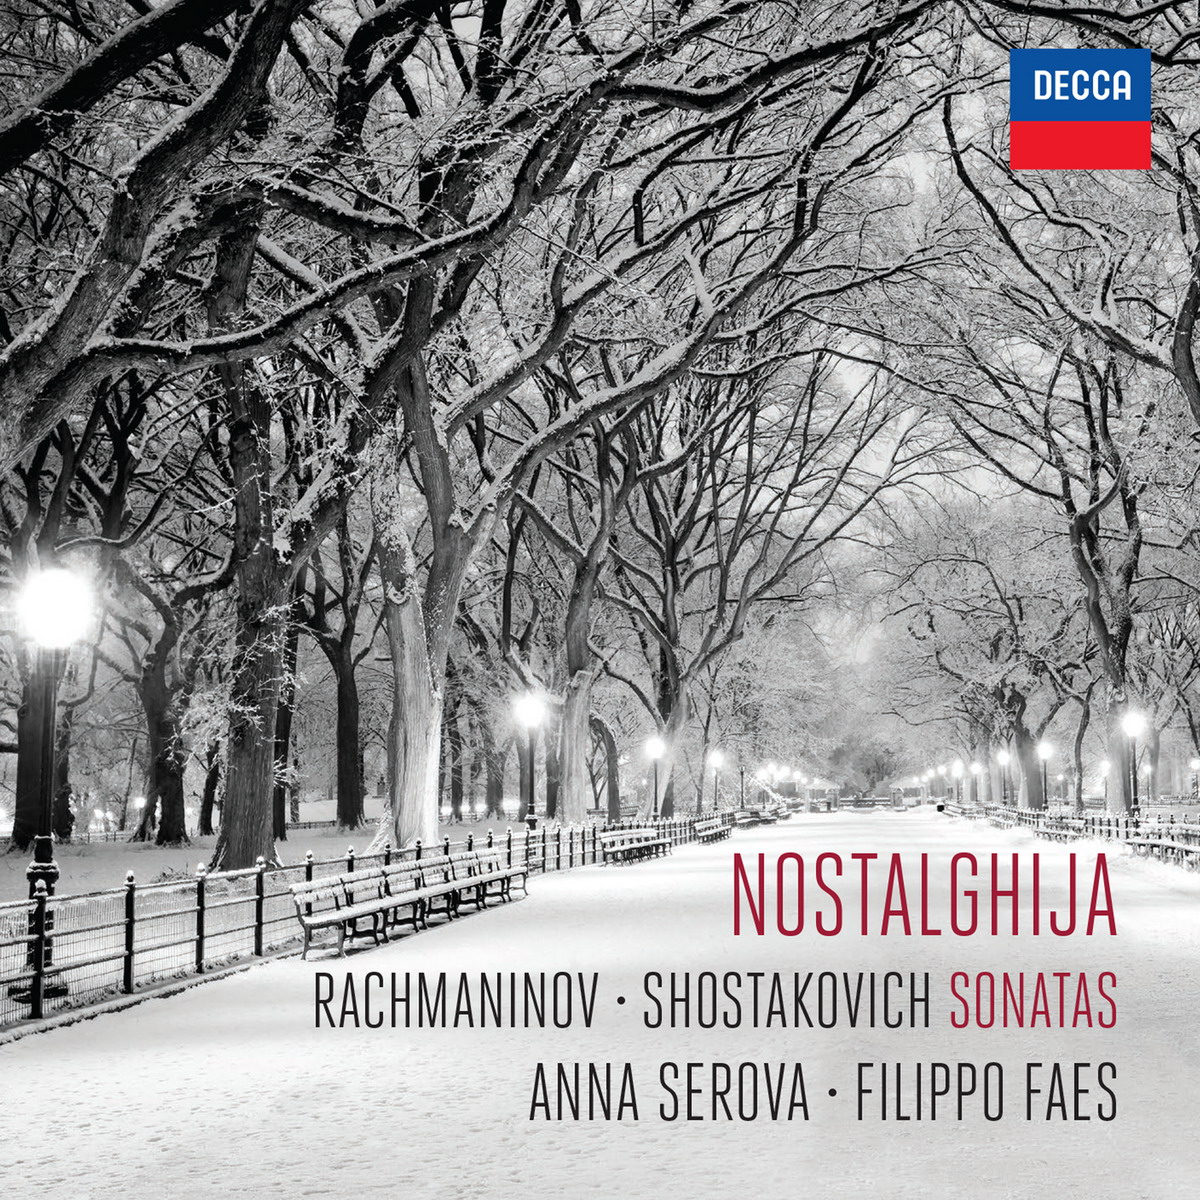 Anna Serova & Filippo Faes – Nostalghija (2015) [Qobuz FLAC 24bit/96kHz]